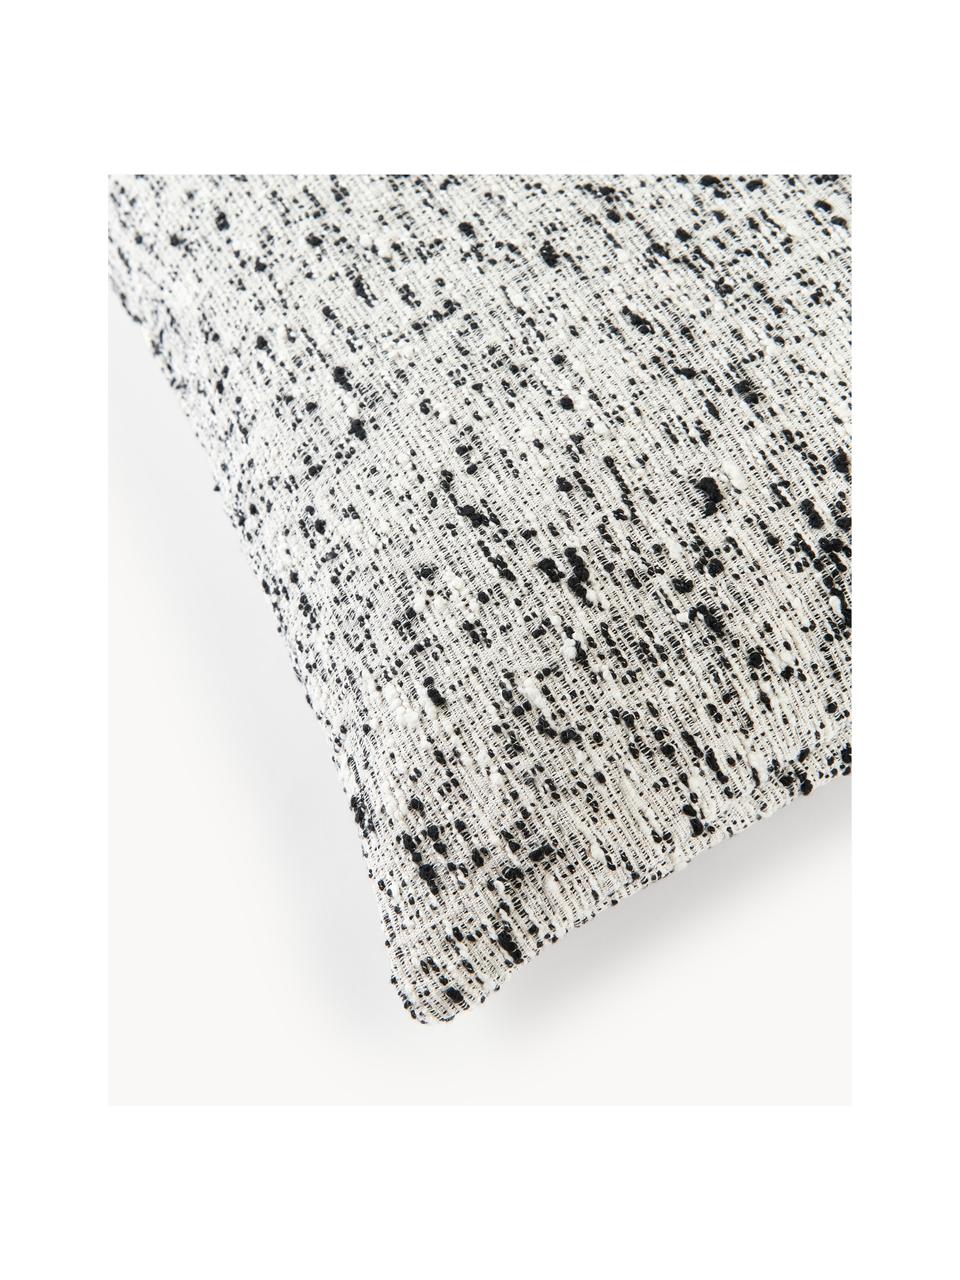 Bouclé-Kissenhülle Talea, Bouclé (92 % Baumwolle, 8 % Polyester)

Bouclé ist ein Material, das sich durch seine unregelmäßig geschwungene Struktur auszeichnet. Die charakteristische Oberfläche entsteht durch eingewebte Schlingen aus verschiedenartigen Garnen, die dem Stoff eine einzigartige Struktur verleihen. Die Schlingenstruktur hat einen isolierenden und gleichzeitig flauschigen Effekt, der den Stoff besonders kuschelig macht., Schwarz, Weiß, B 50 x L 50 cm